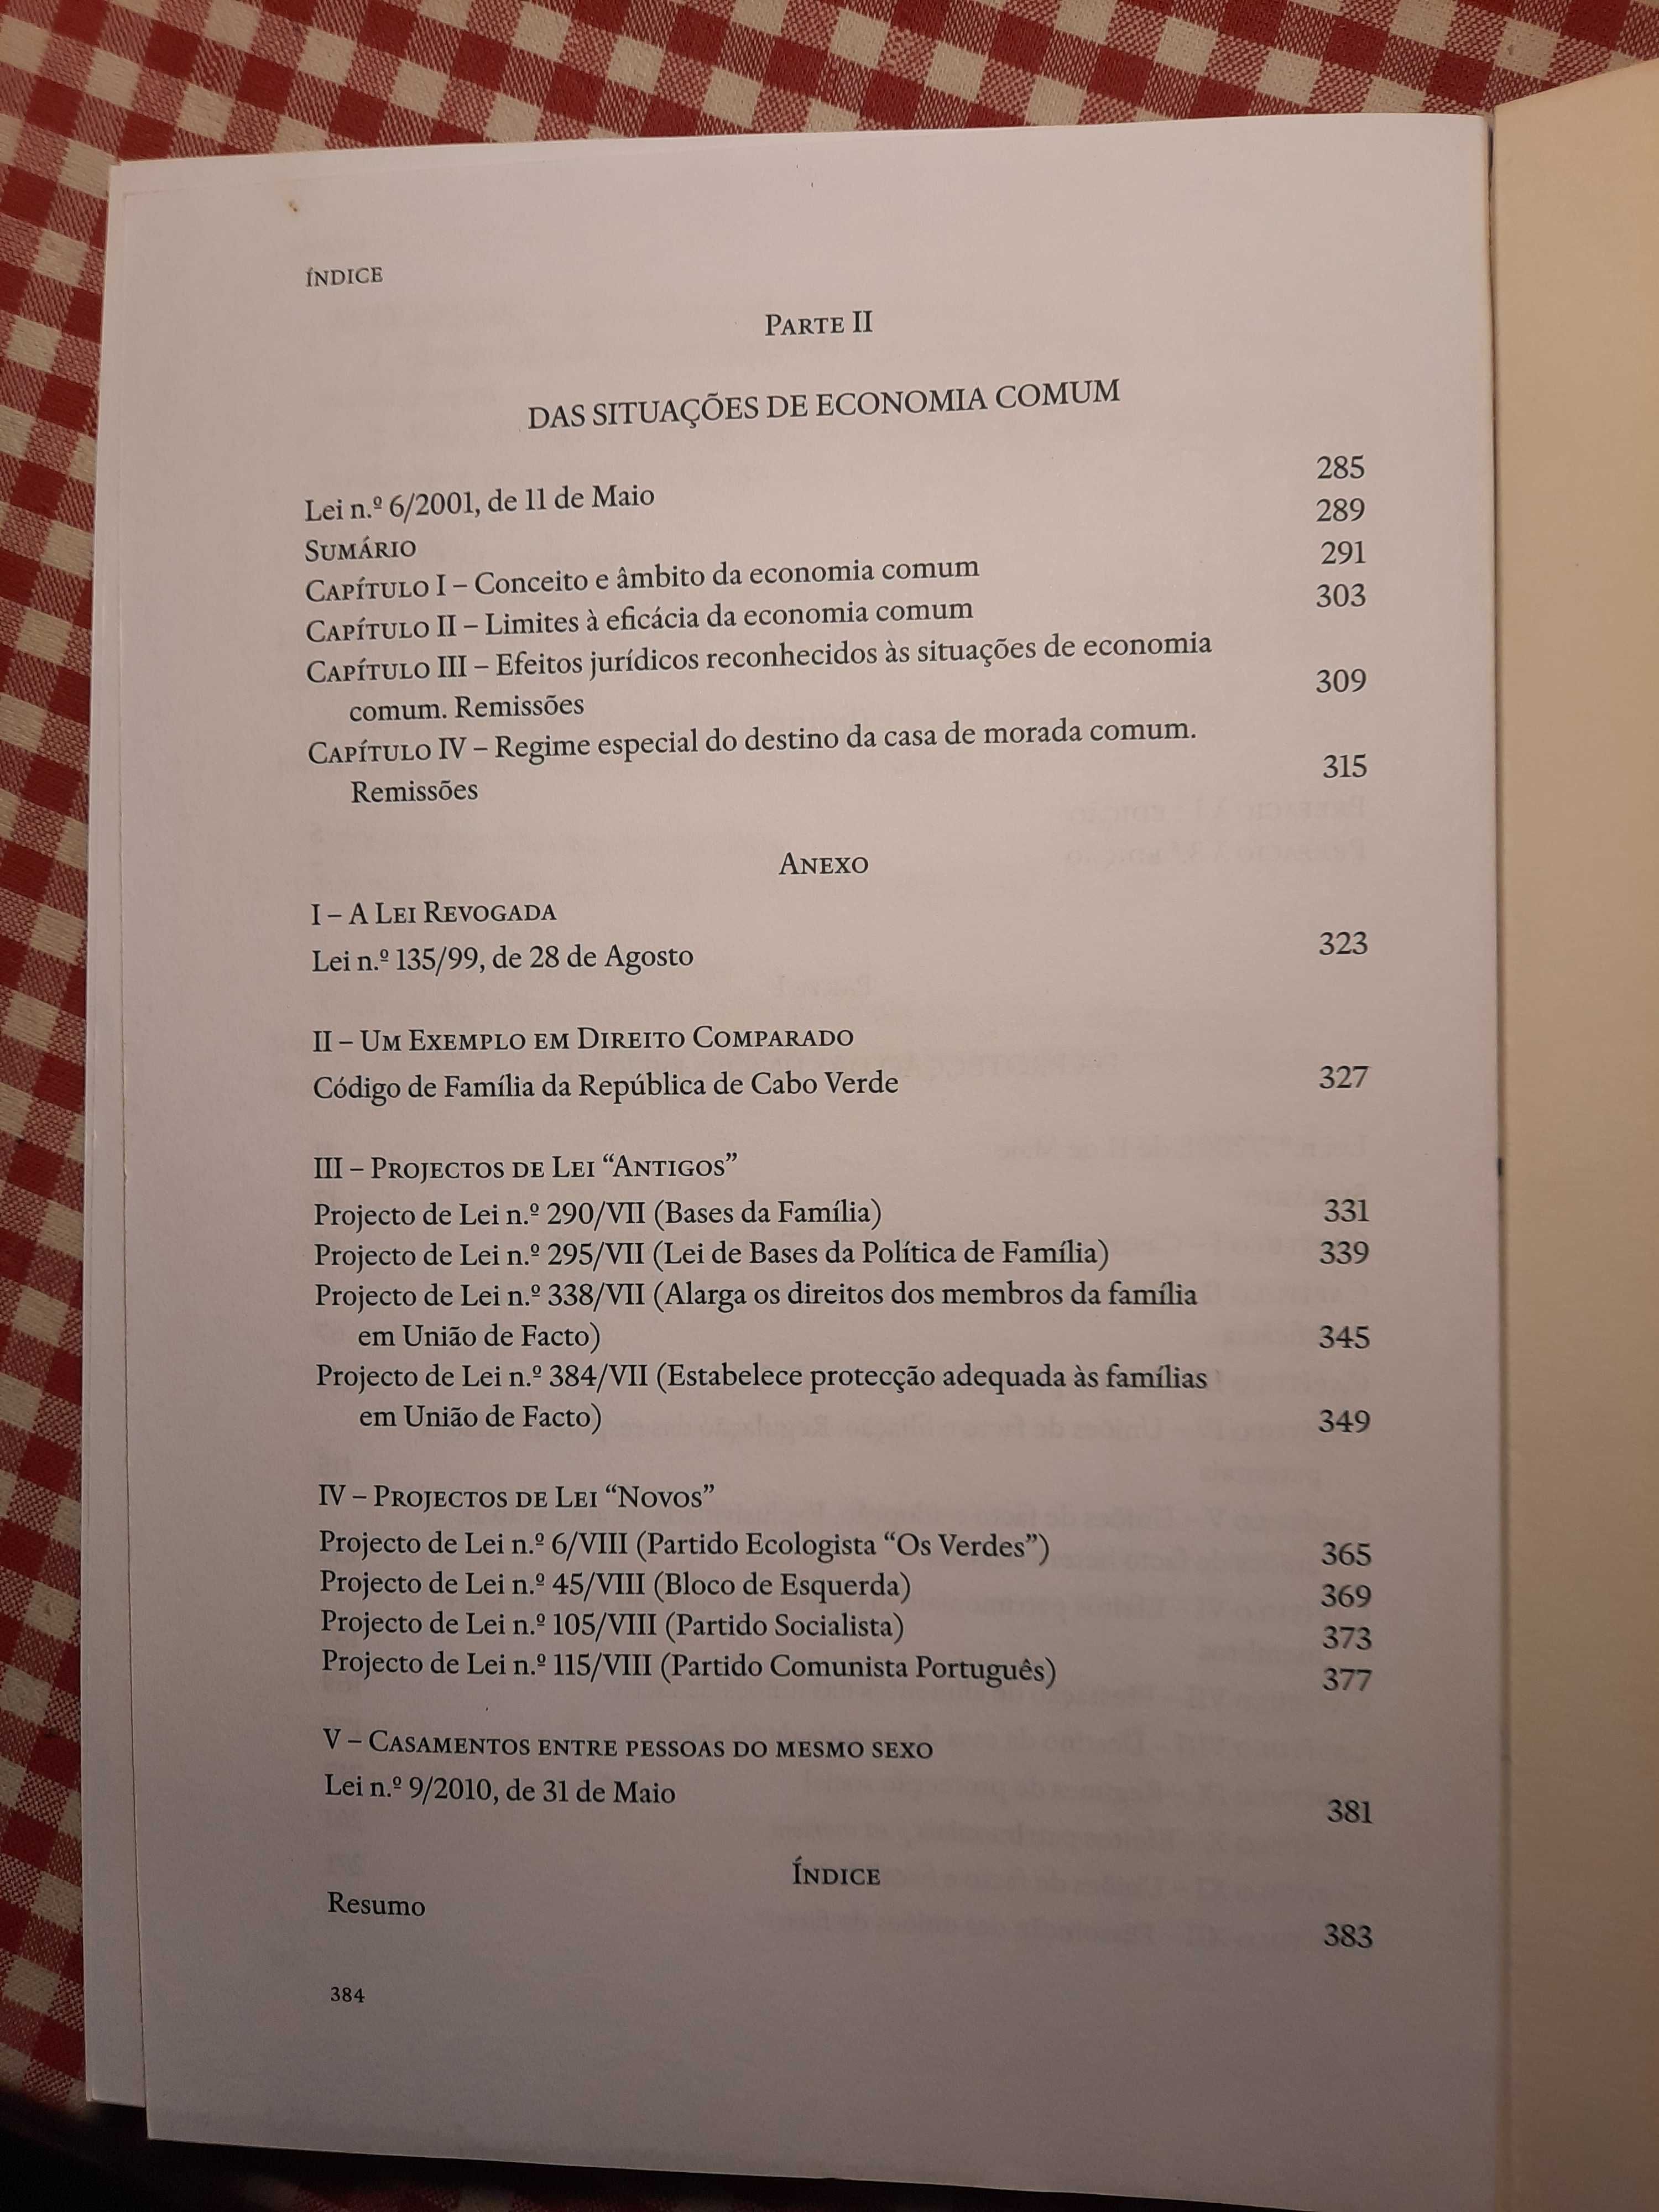 Unioes de facto e Economia Comum autor José António França Pitao